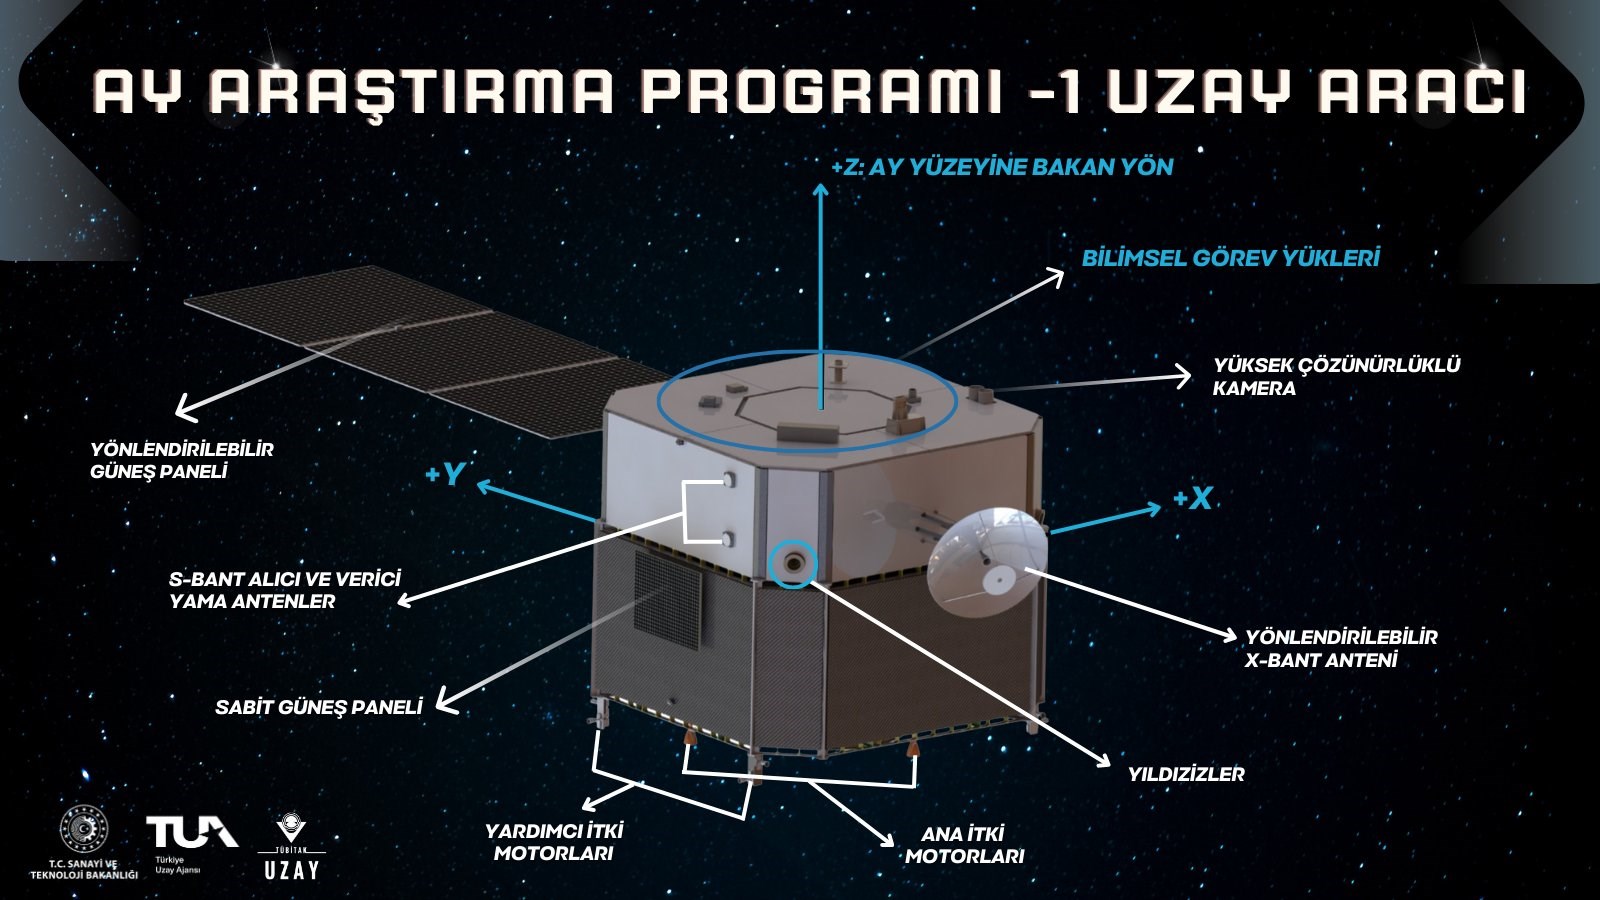 AYAP-1 görevinde Ay'a gidecek uzay aracının özellikleri neler?